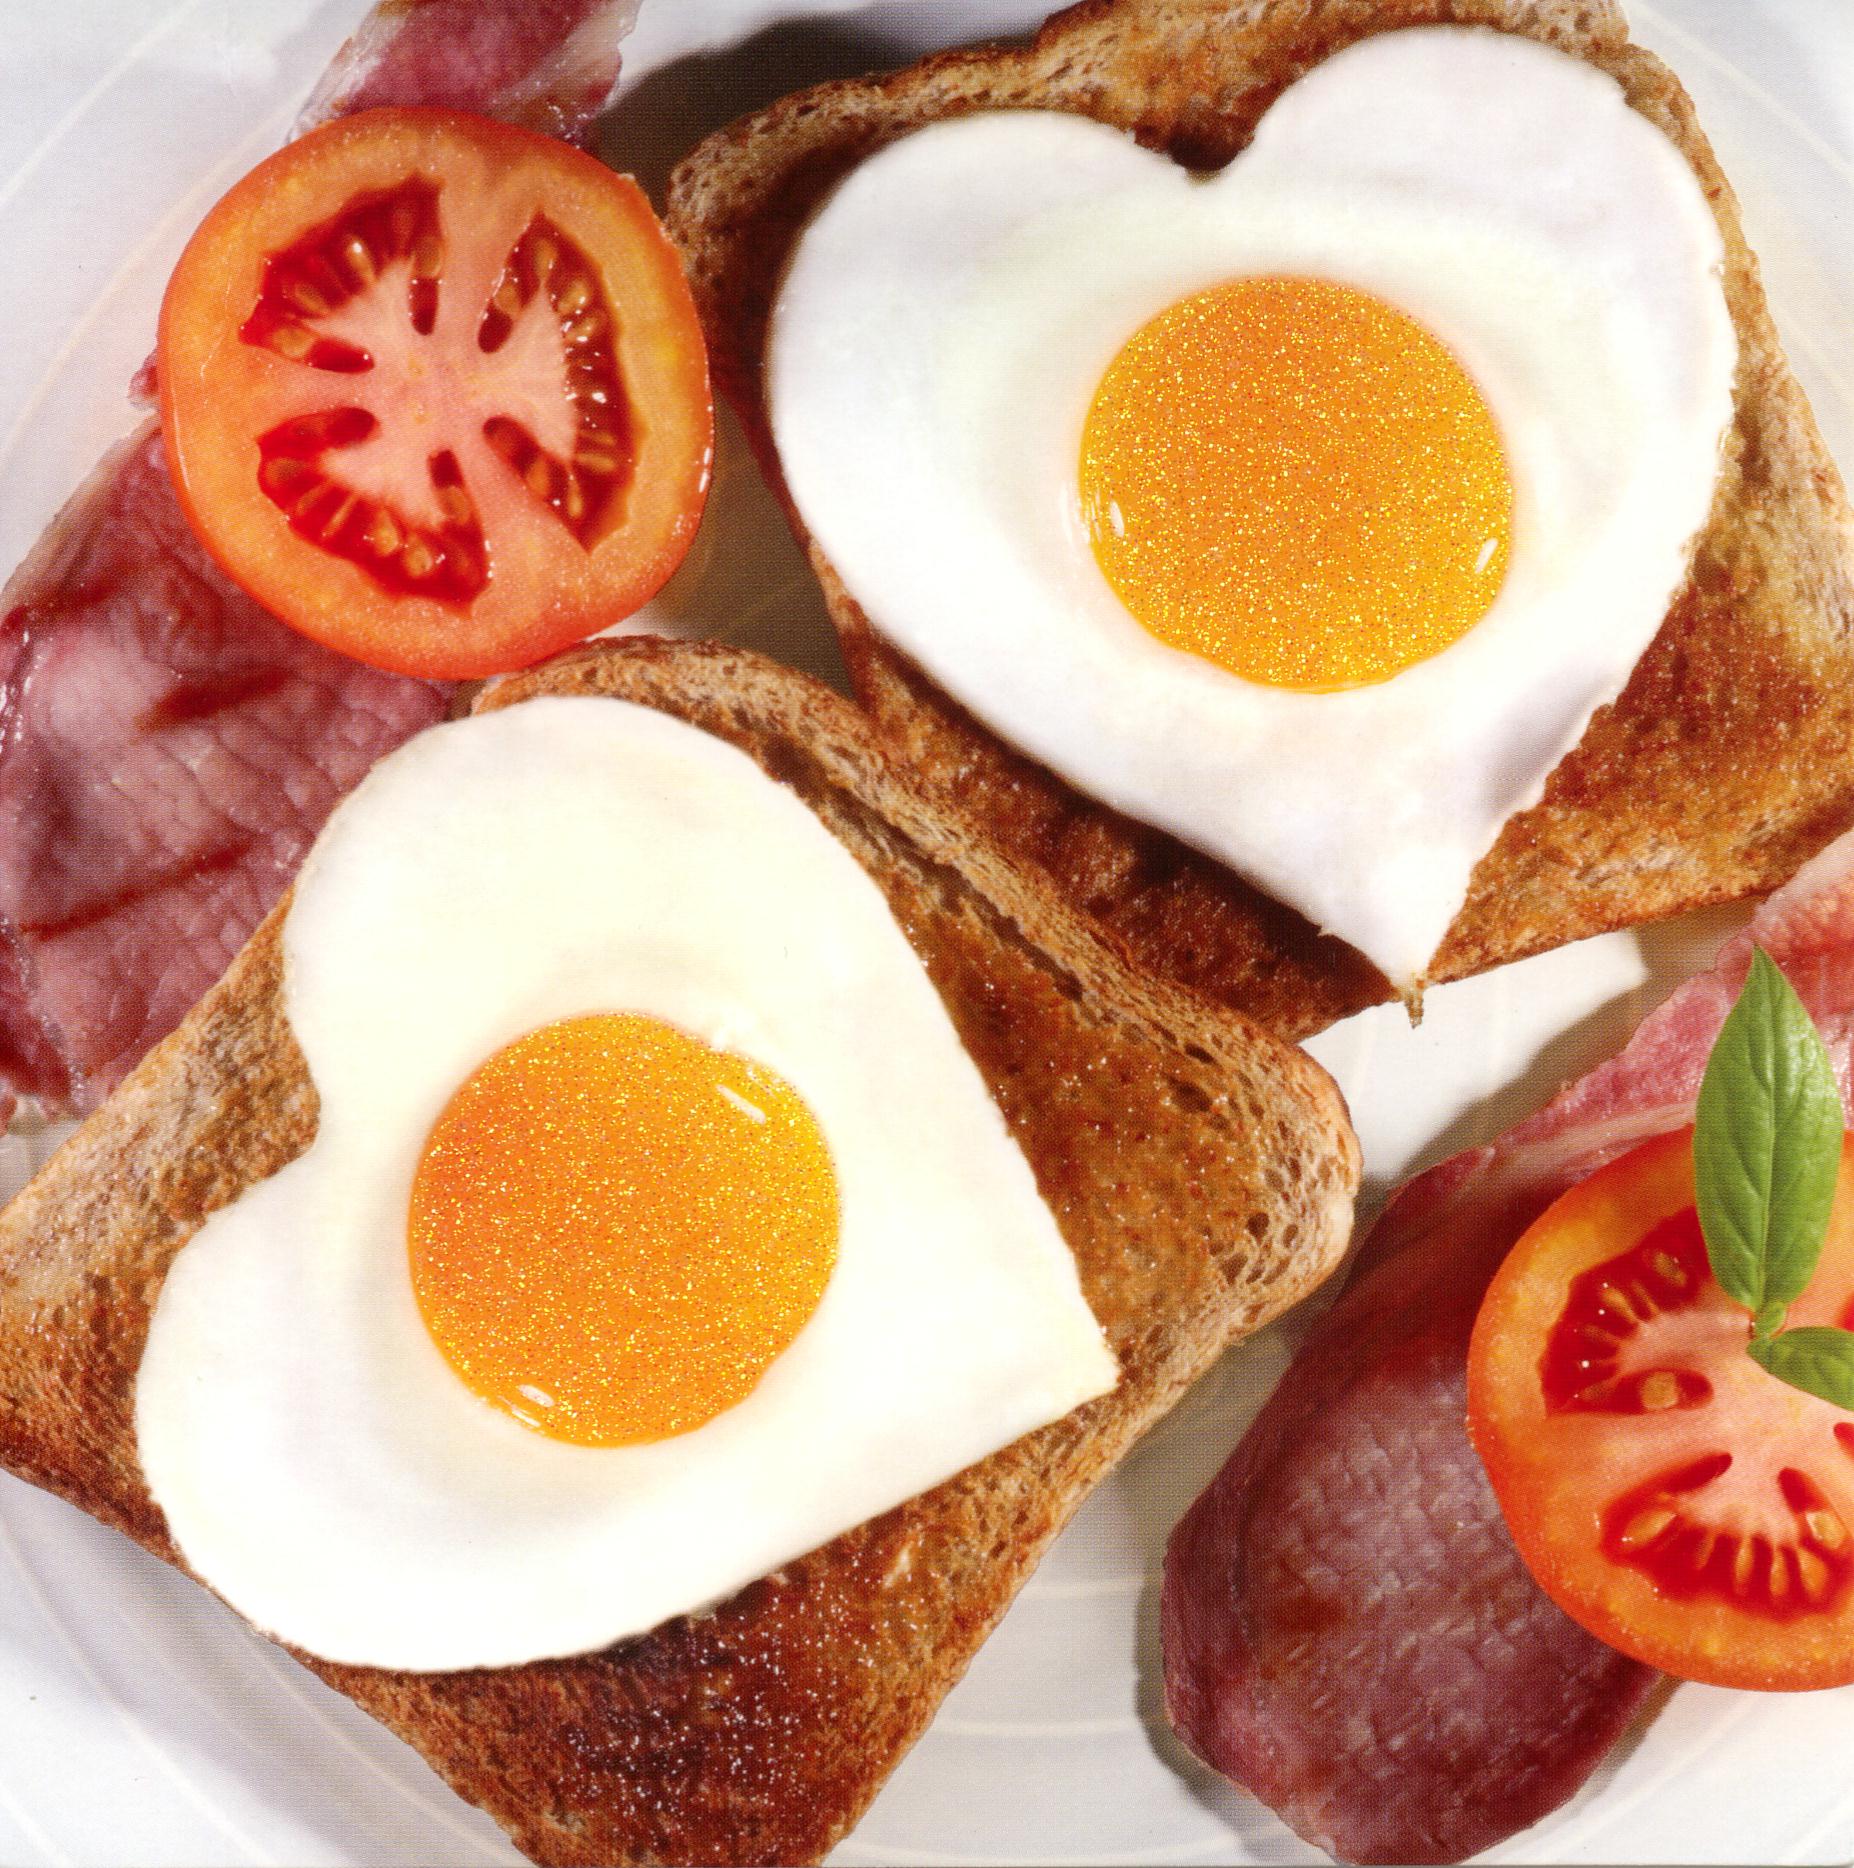 La importancia de consumir proteínas en el desayuno.